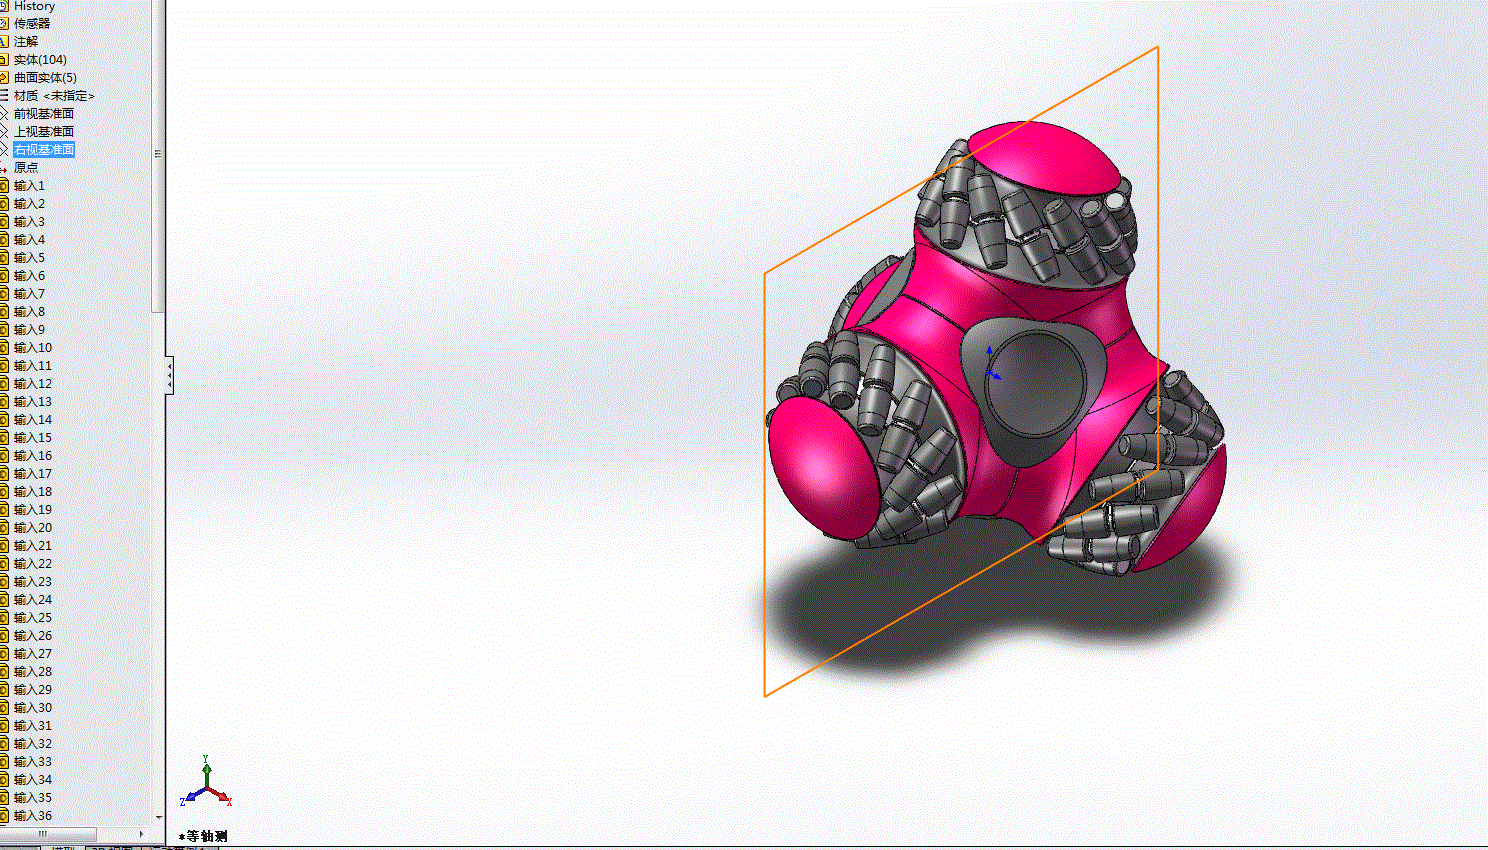 四角麦克纳姆轮机器人3D图纸3D模型.zip